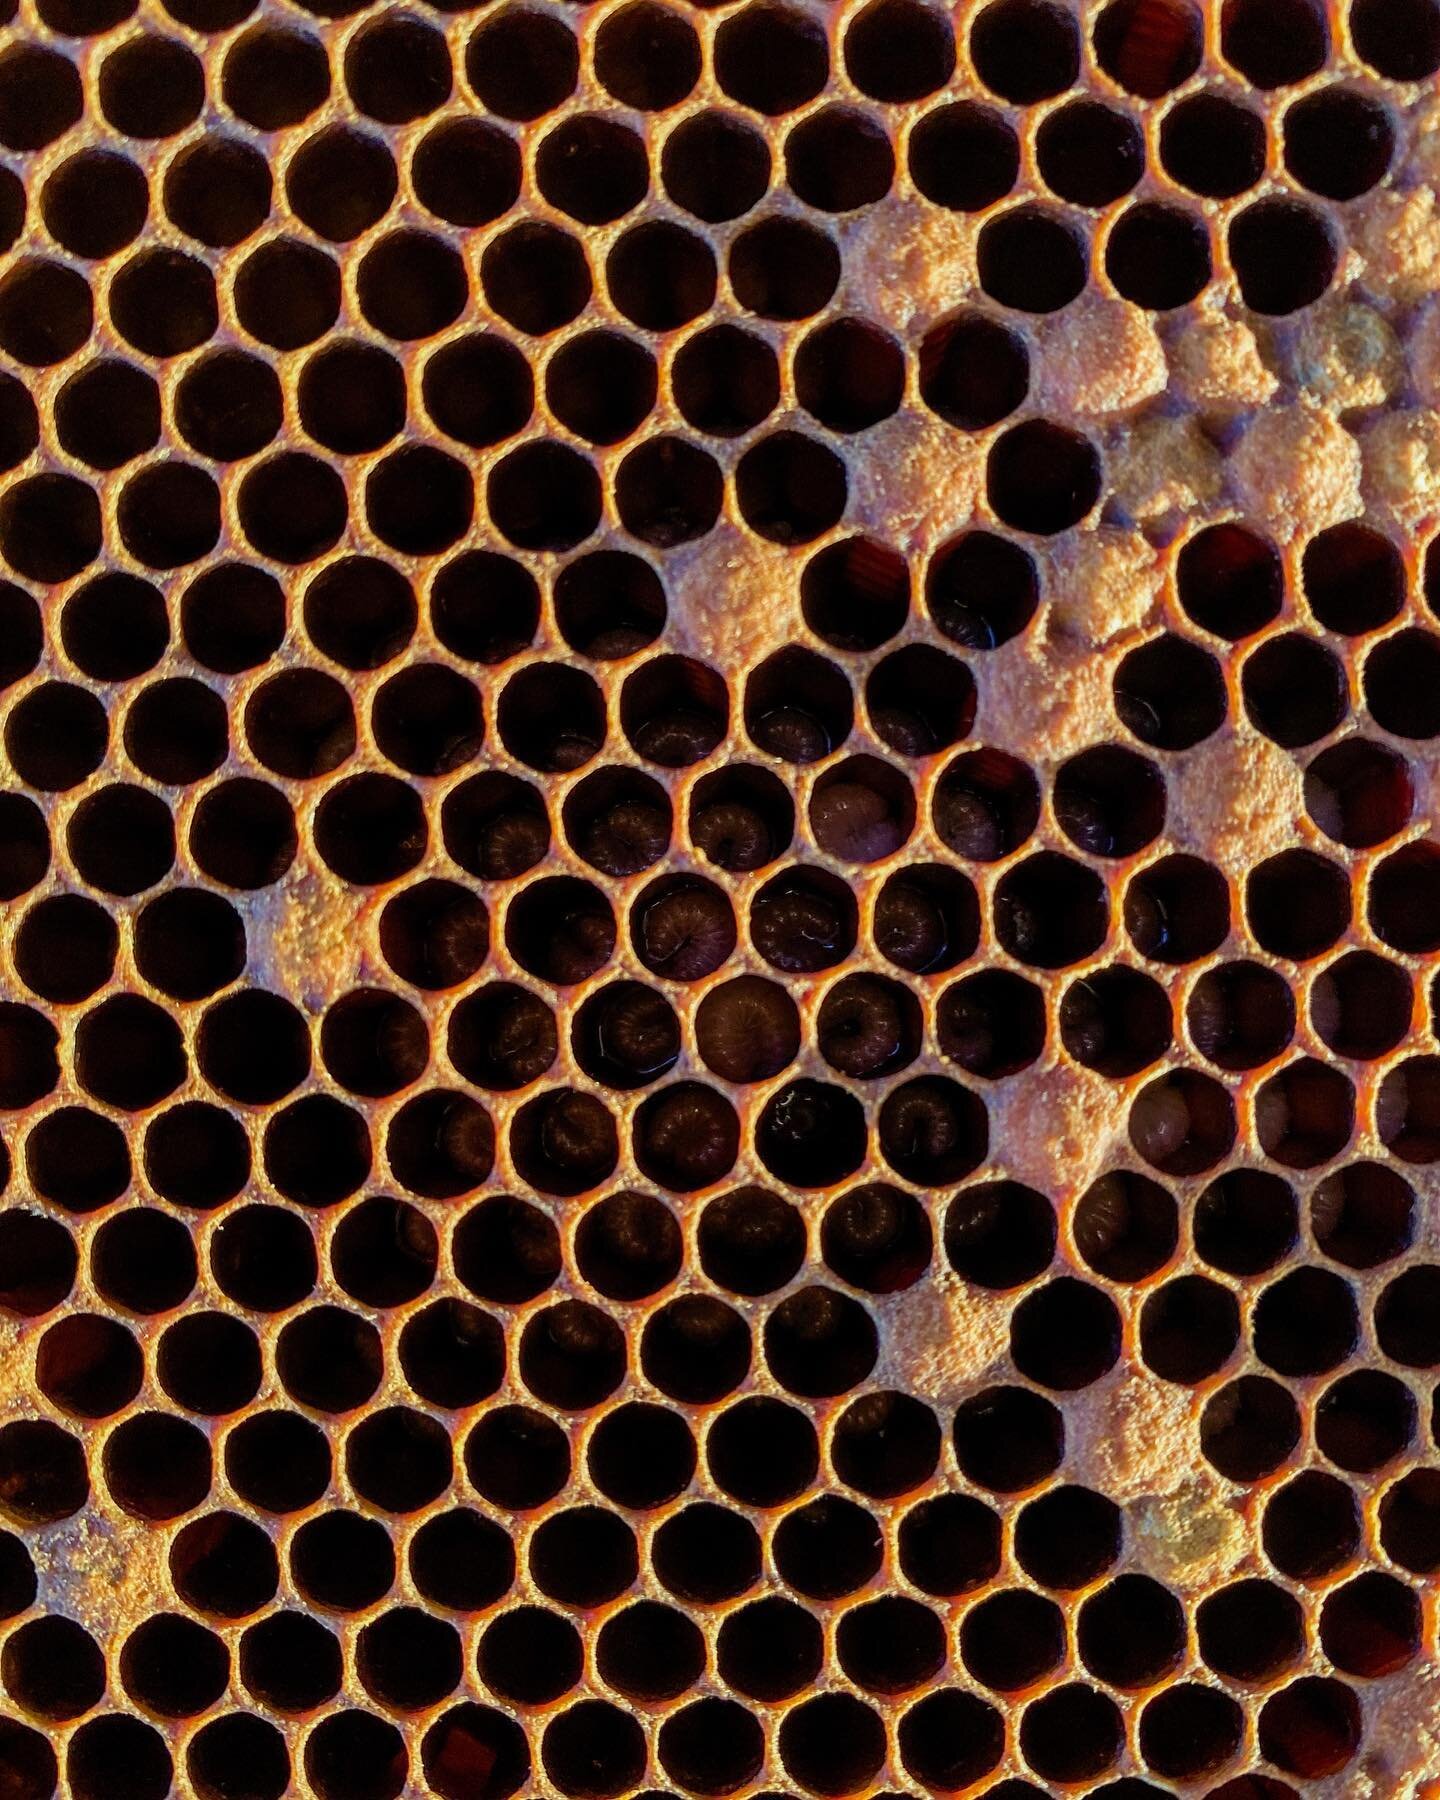 Trypophobia, anyone? 
P.S. peep the bee larvae&hellip;
&bull;
&bull;
&bull;
#beekeeping #beekeepers #bees #honeybees #lavenderfarm #discover #sidehustle #physicianassistantowned #healthcare #optoutdoors #nature #coloradobeekeeping #supportsmallbusine